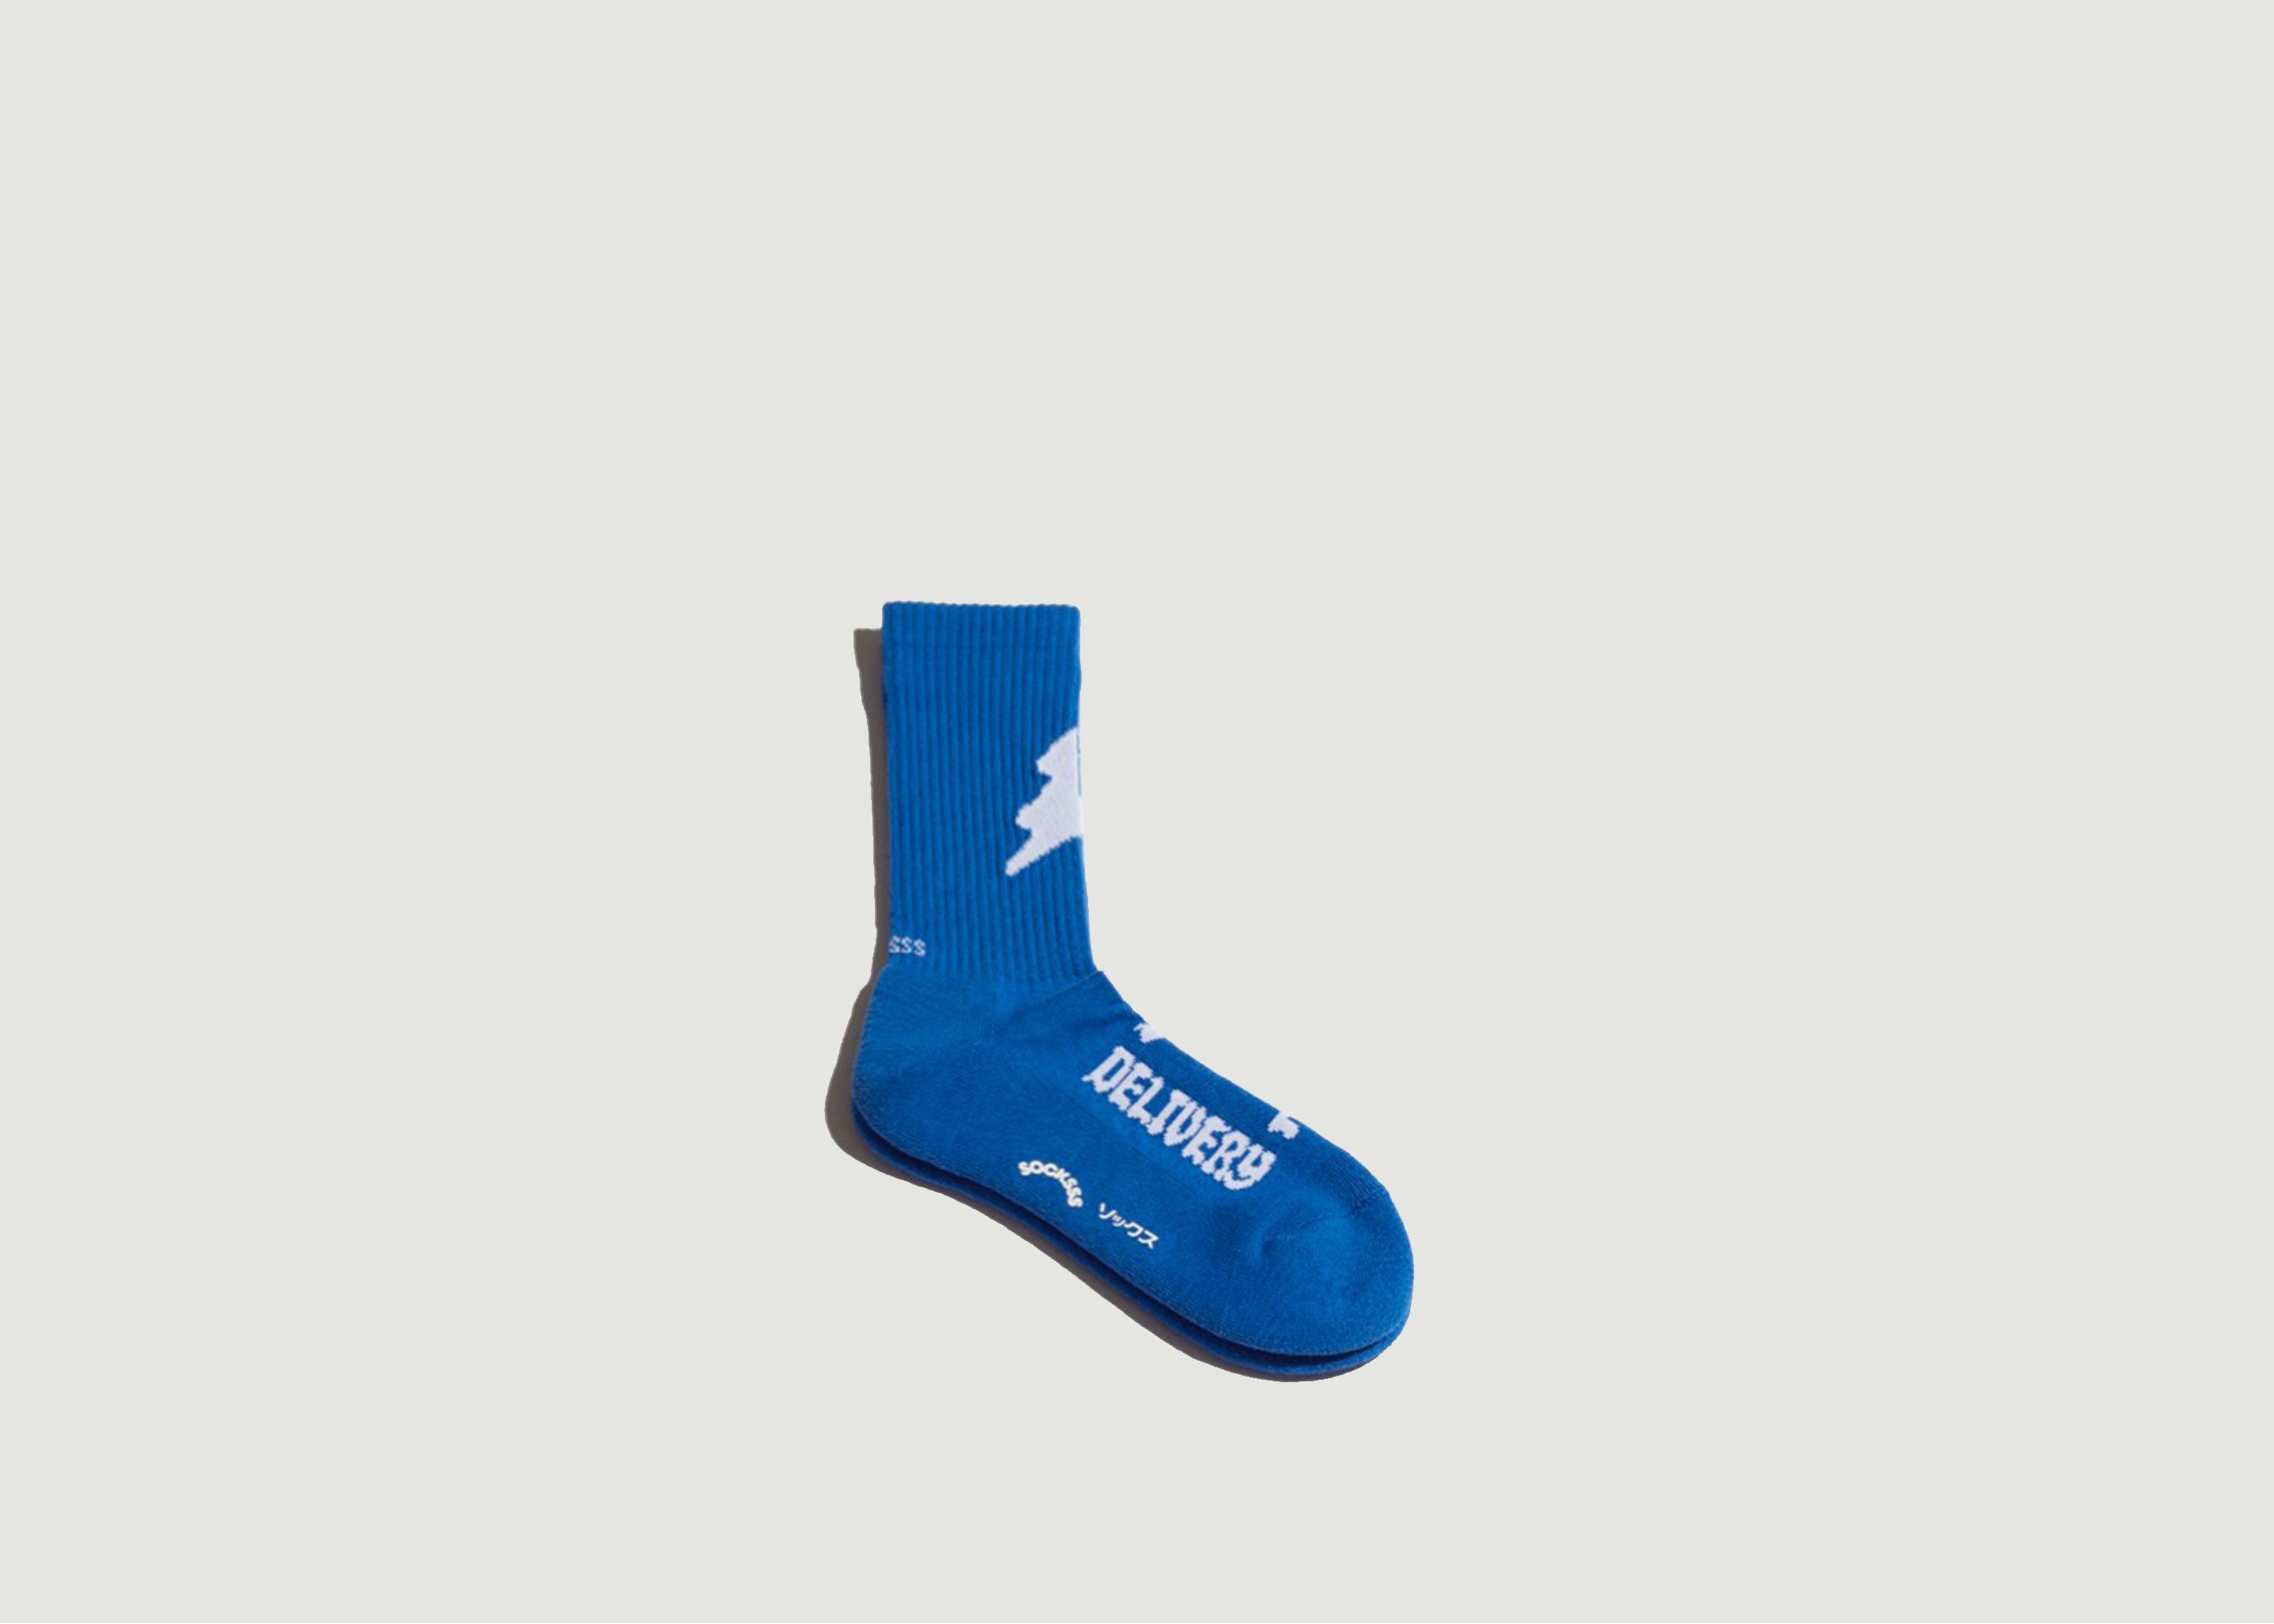 Socken aus Bio-Baumwolle mit Sonderlieferung - Socksss